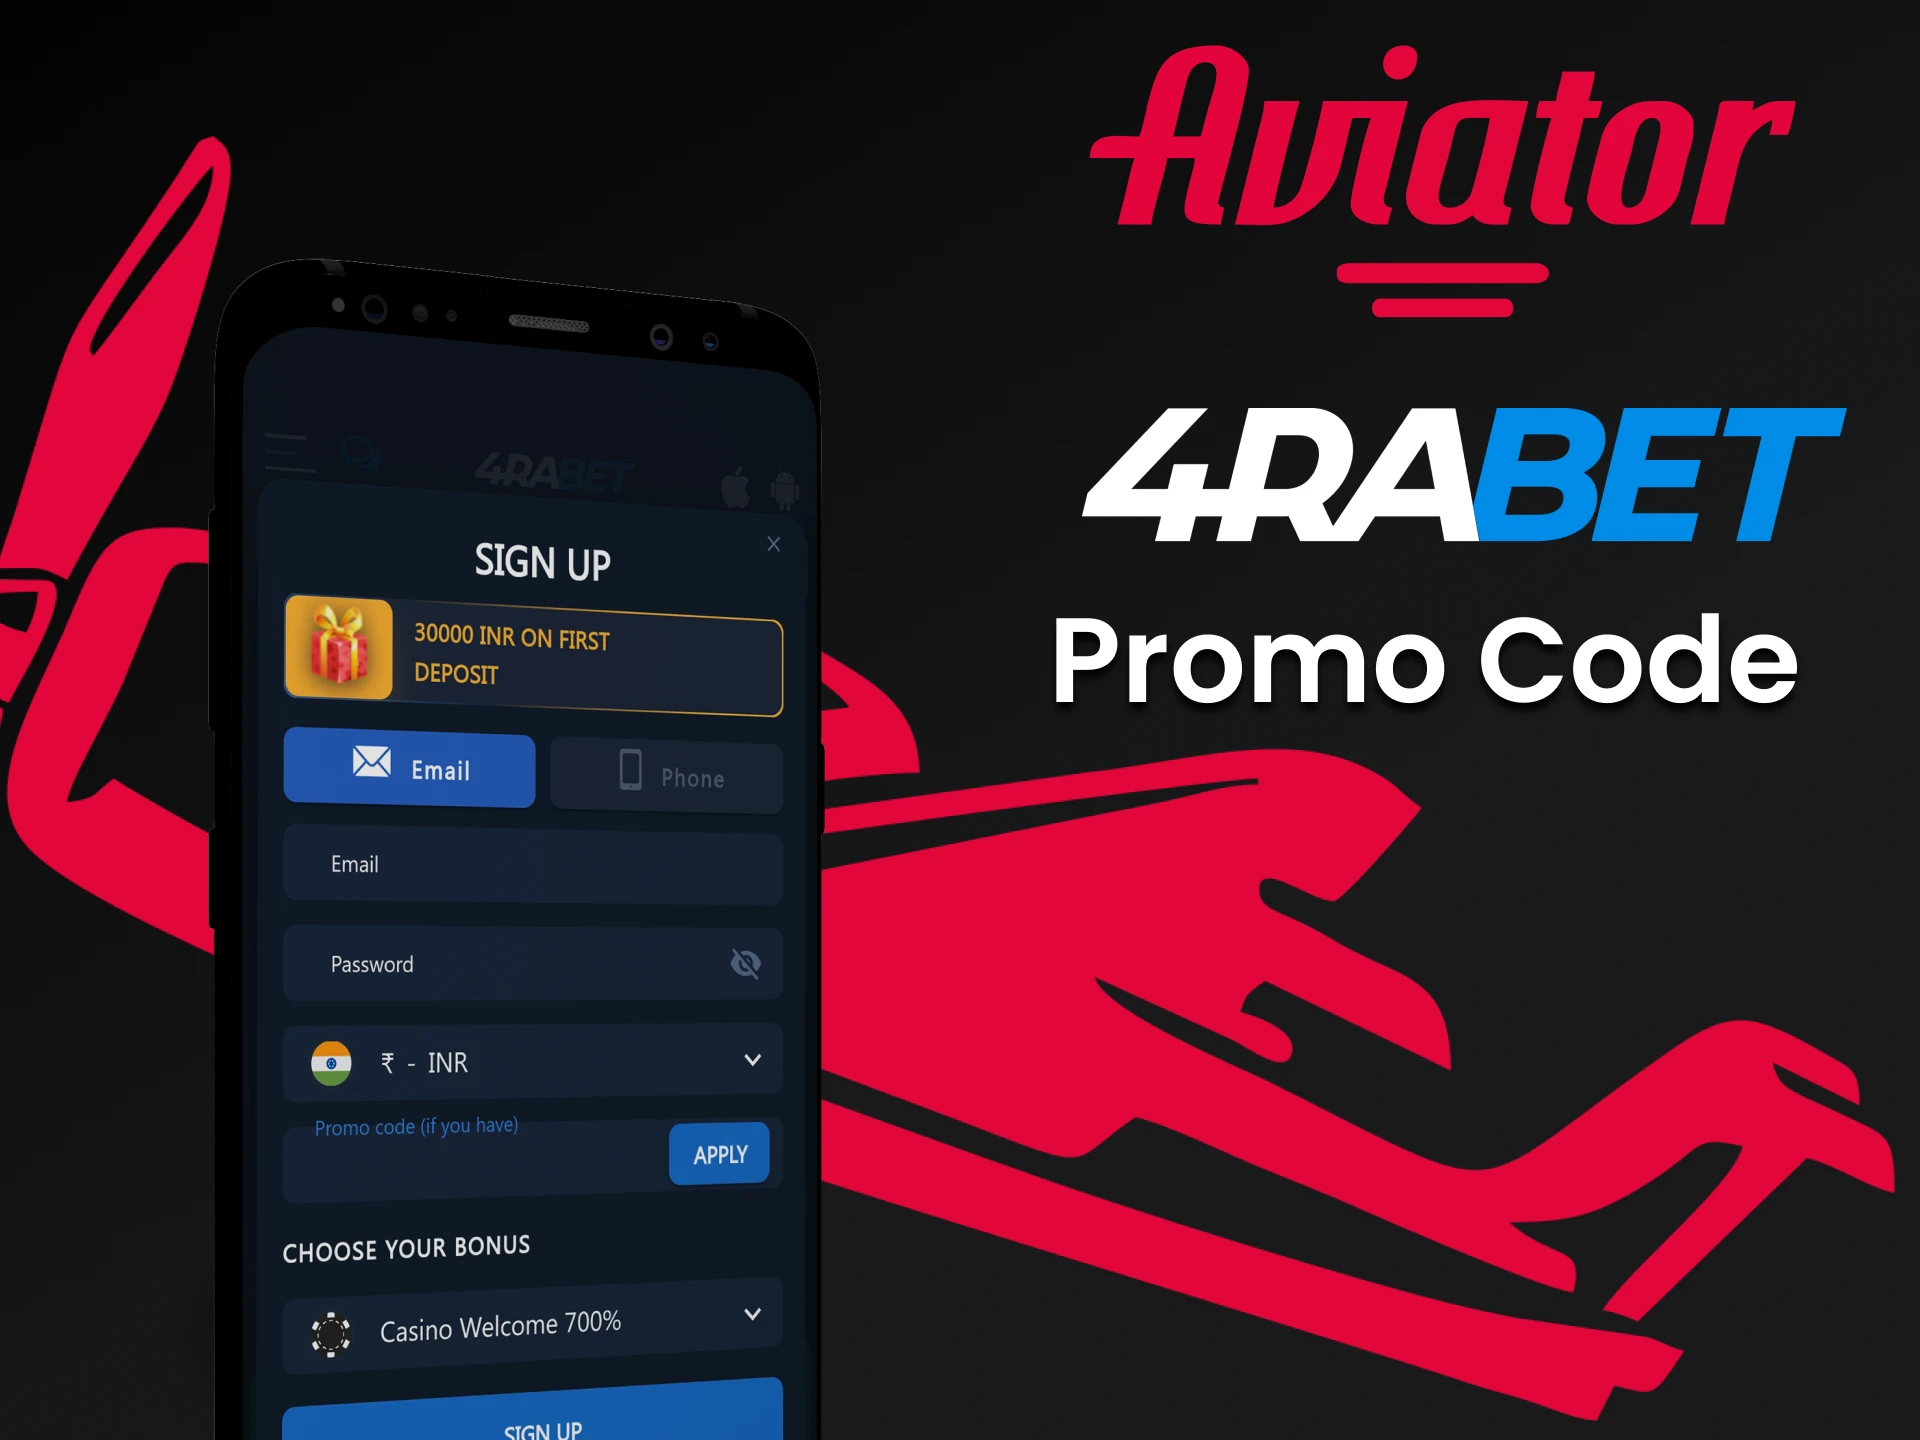 Use um código promocional especial do 4rabet para jogar Aviator.